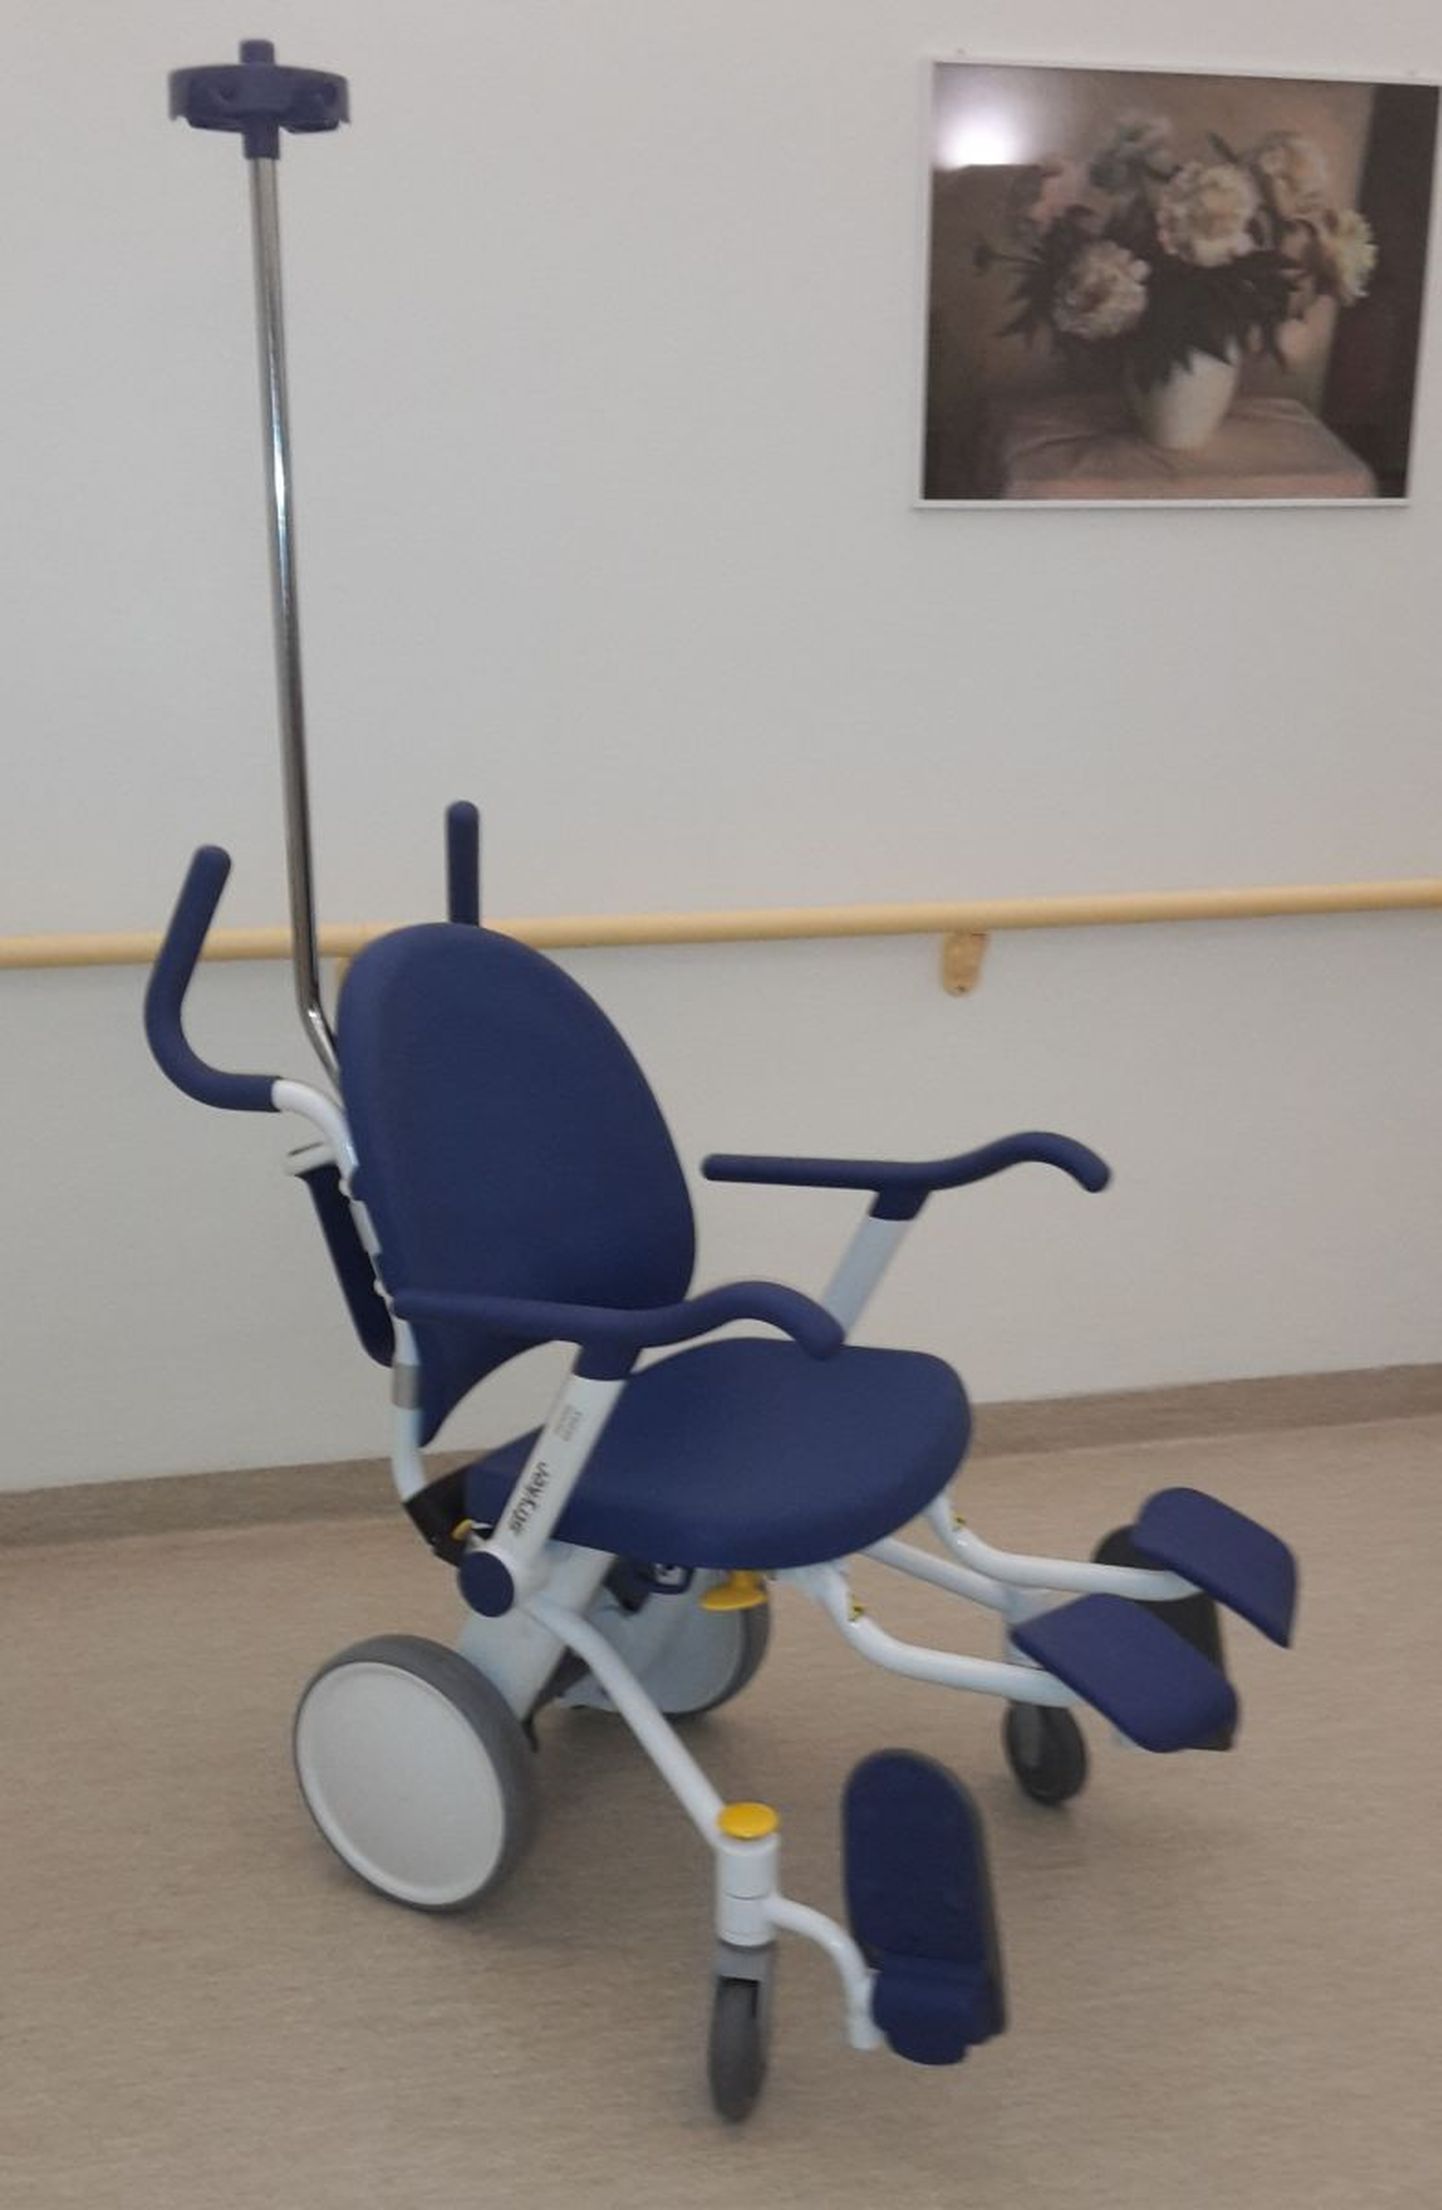 Uued toolid meeldivad nii patsientidele kui ka haigla töötajatele.